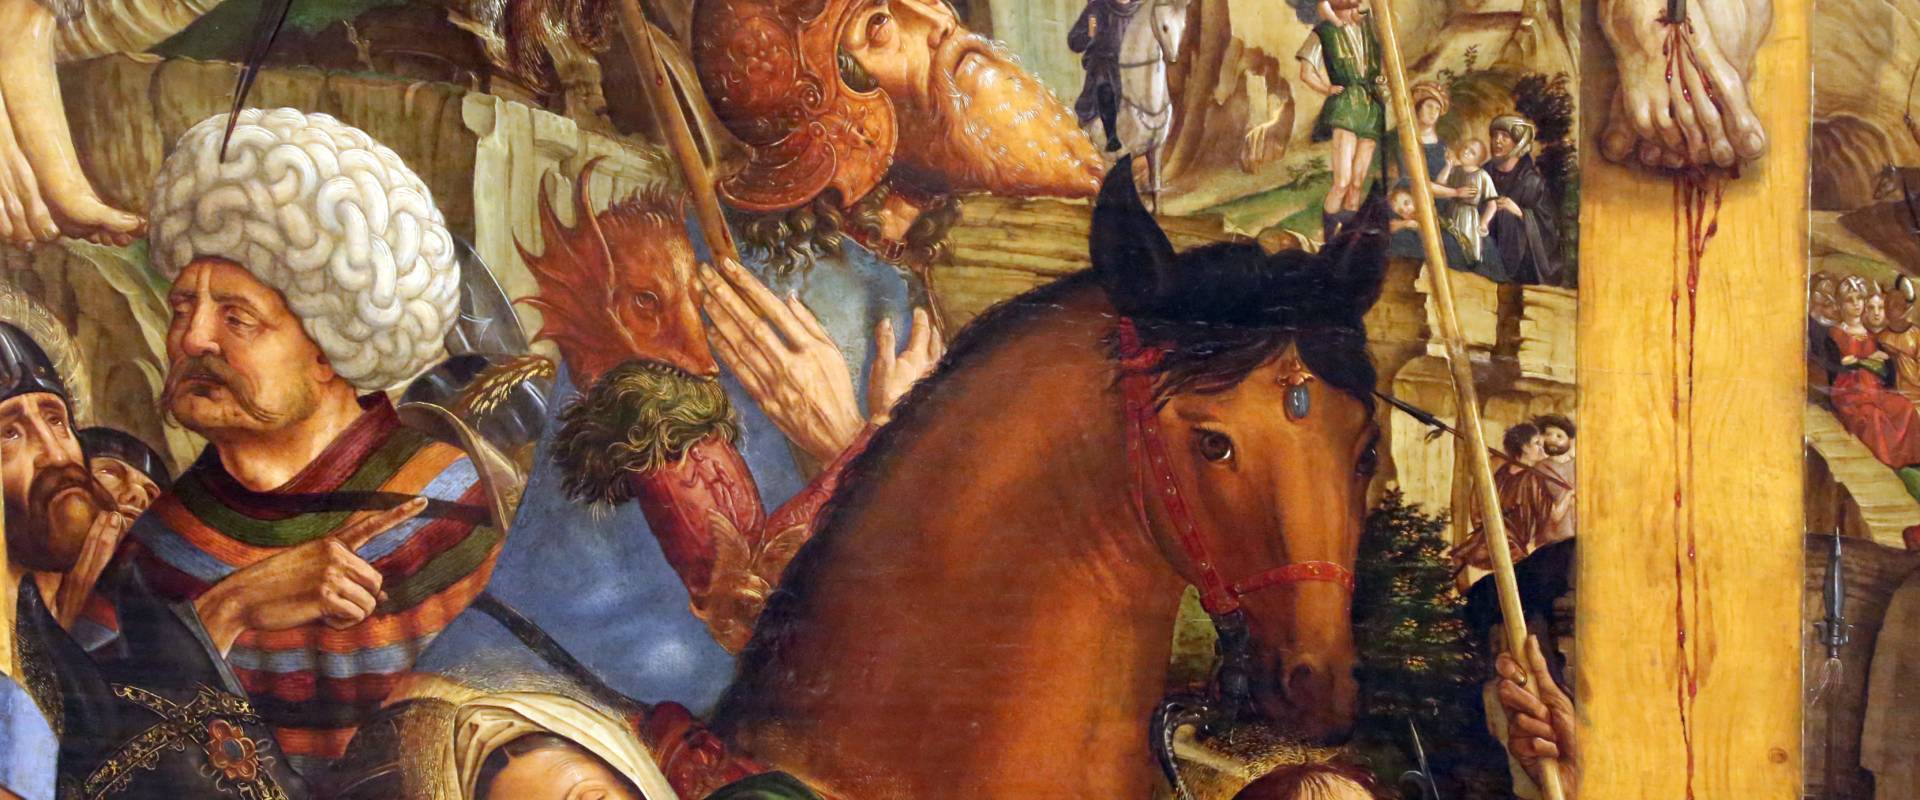 Francesco bianchi ferrari, crocifissione coi ss. girolamo e francesco (pala delle tre croci), 1490-95 ca. 05 cavallo photo by Sailko